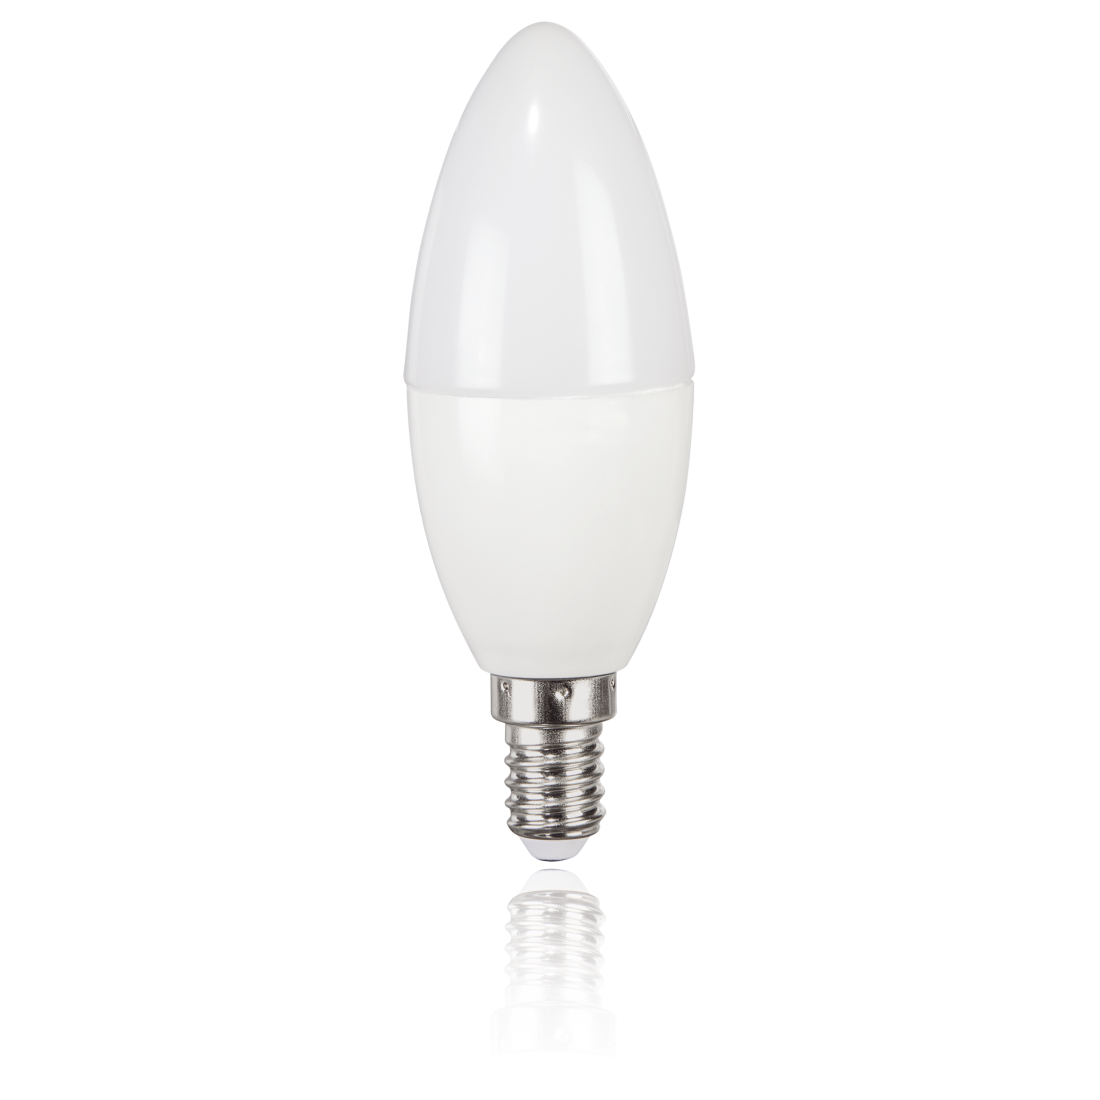 abx2 Druckfähige Abbildung 2 - Xavax, LED-Lampe, E14, 470lm ersetzt 40W, Kerzenlampe, Neutralweiß